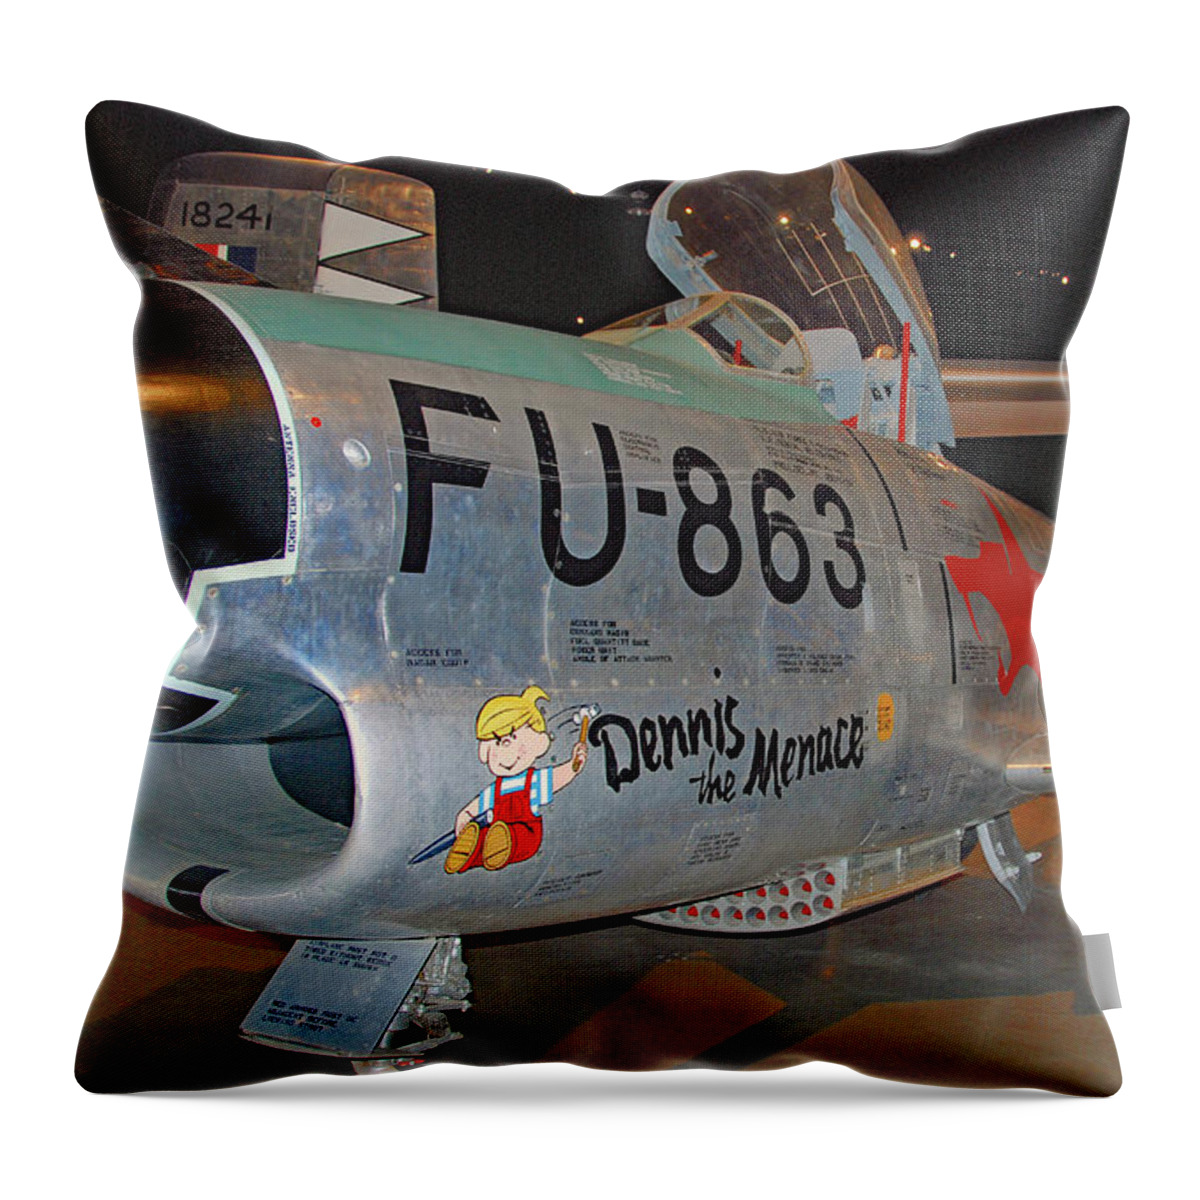 Aviation Throw Pillow featuring the photograph Dennis.... by John Schneider